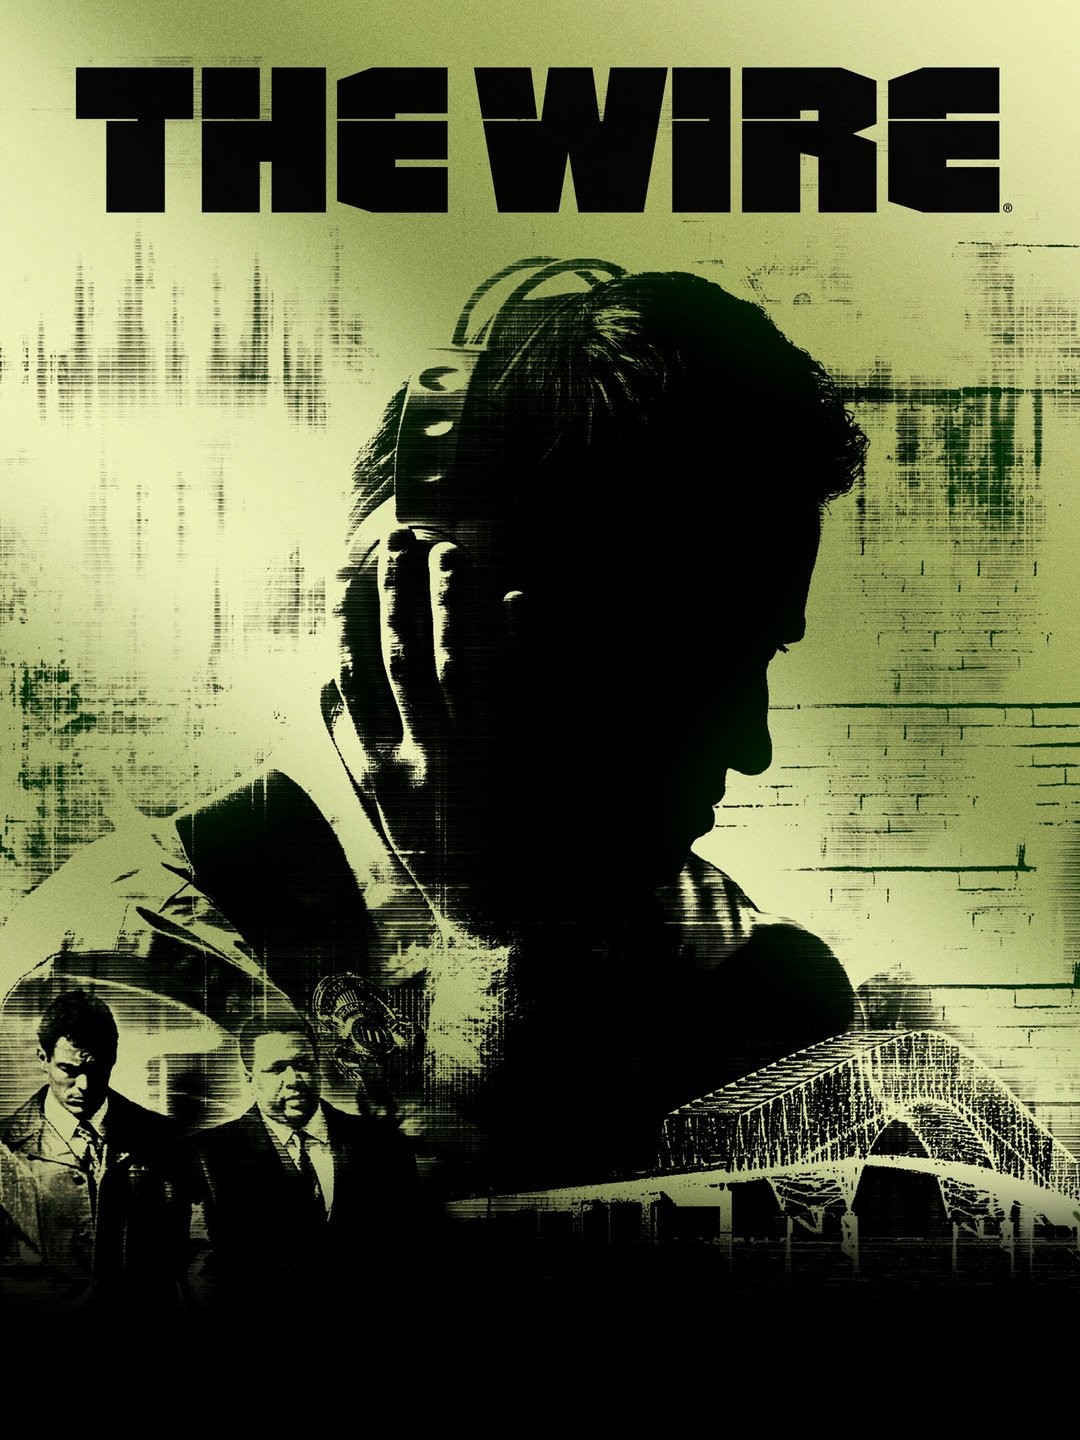 The Wire (season 2) - Wikipedia